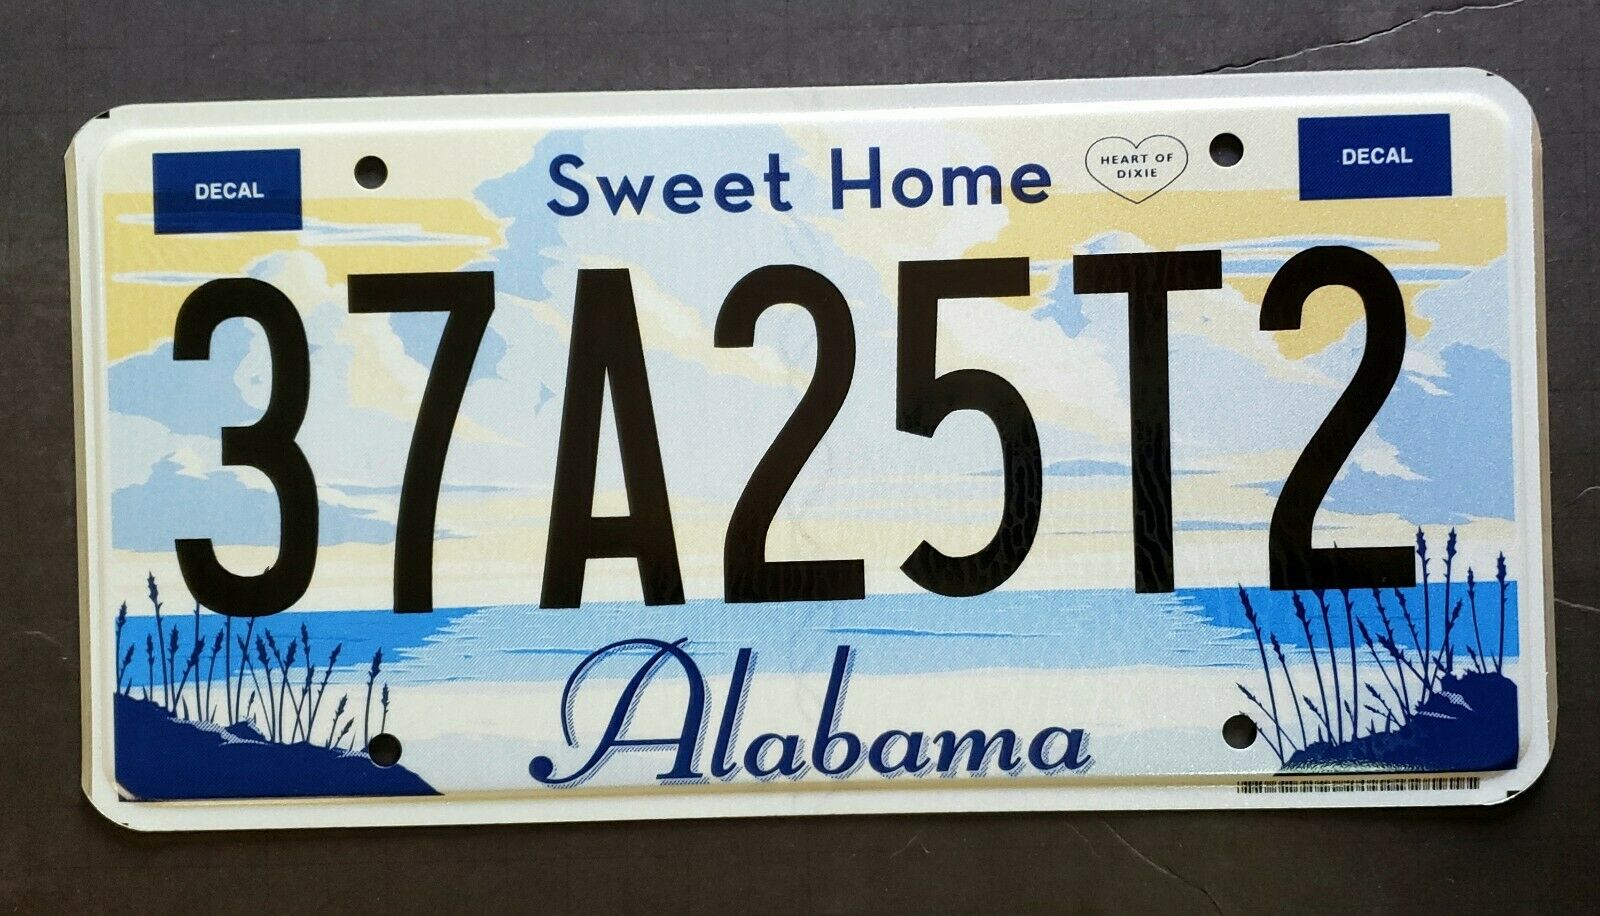 Alabama Sweet Home Dixie Beach Ocean Al License Plate 37a25t2